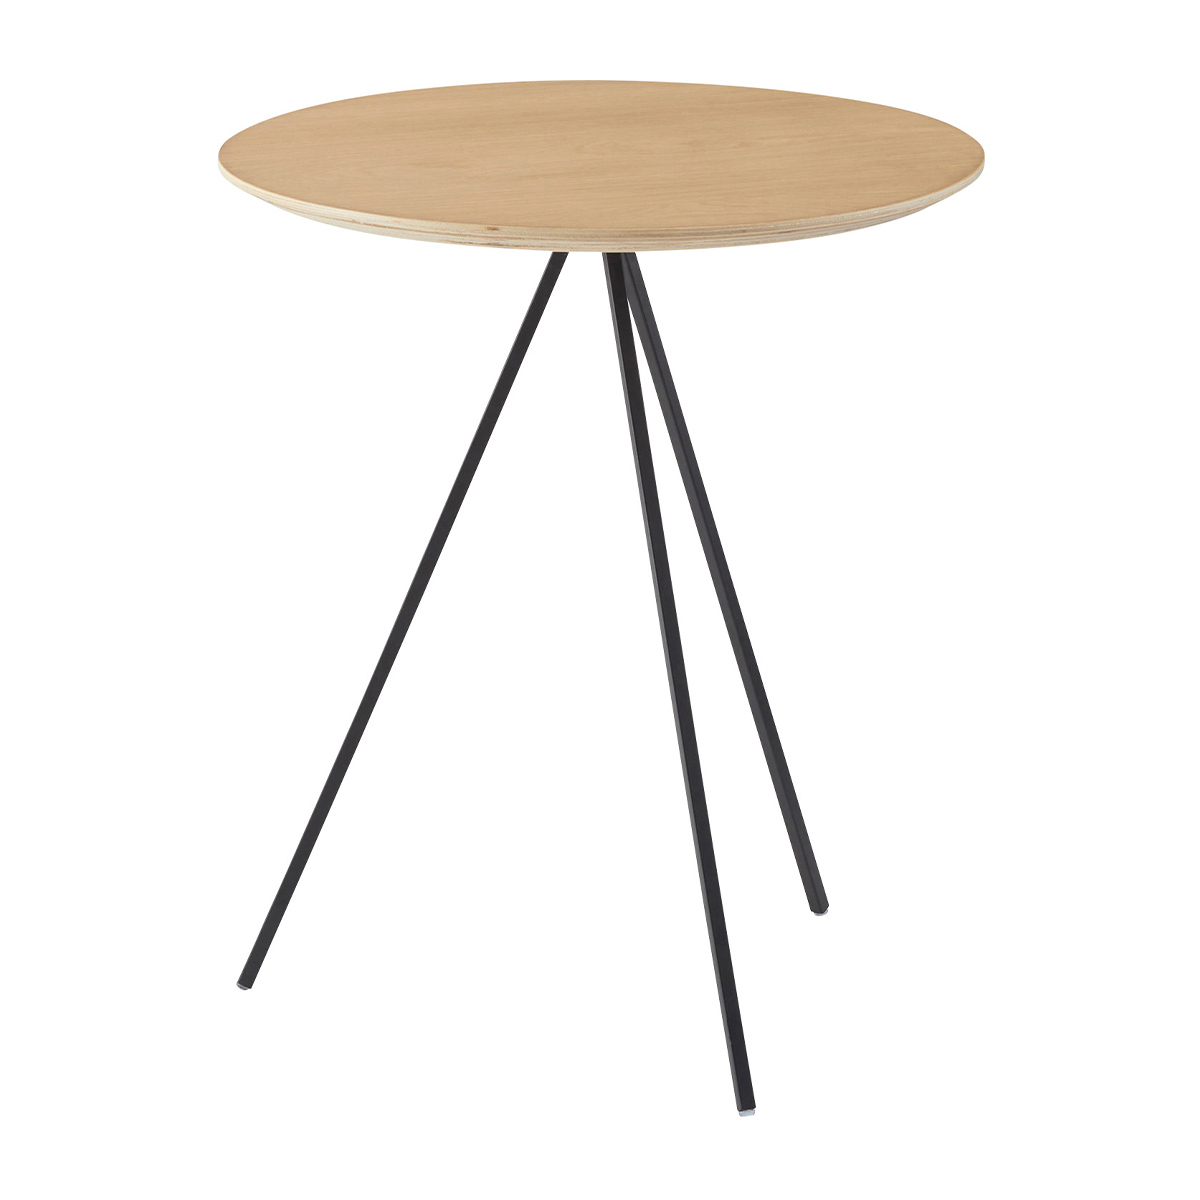 サイドテーブル テーブル ナイトテーブル アイアン 木製 天然木 オーク おしゃれ シンプル ナチュラル ブラック ラウンド 丸型 幅45cm  高さ51.5cm 3本脚